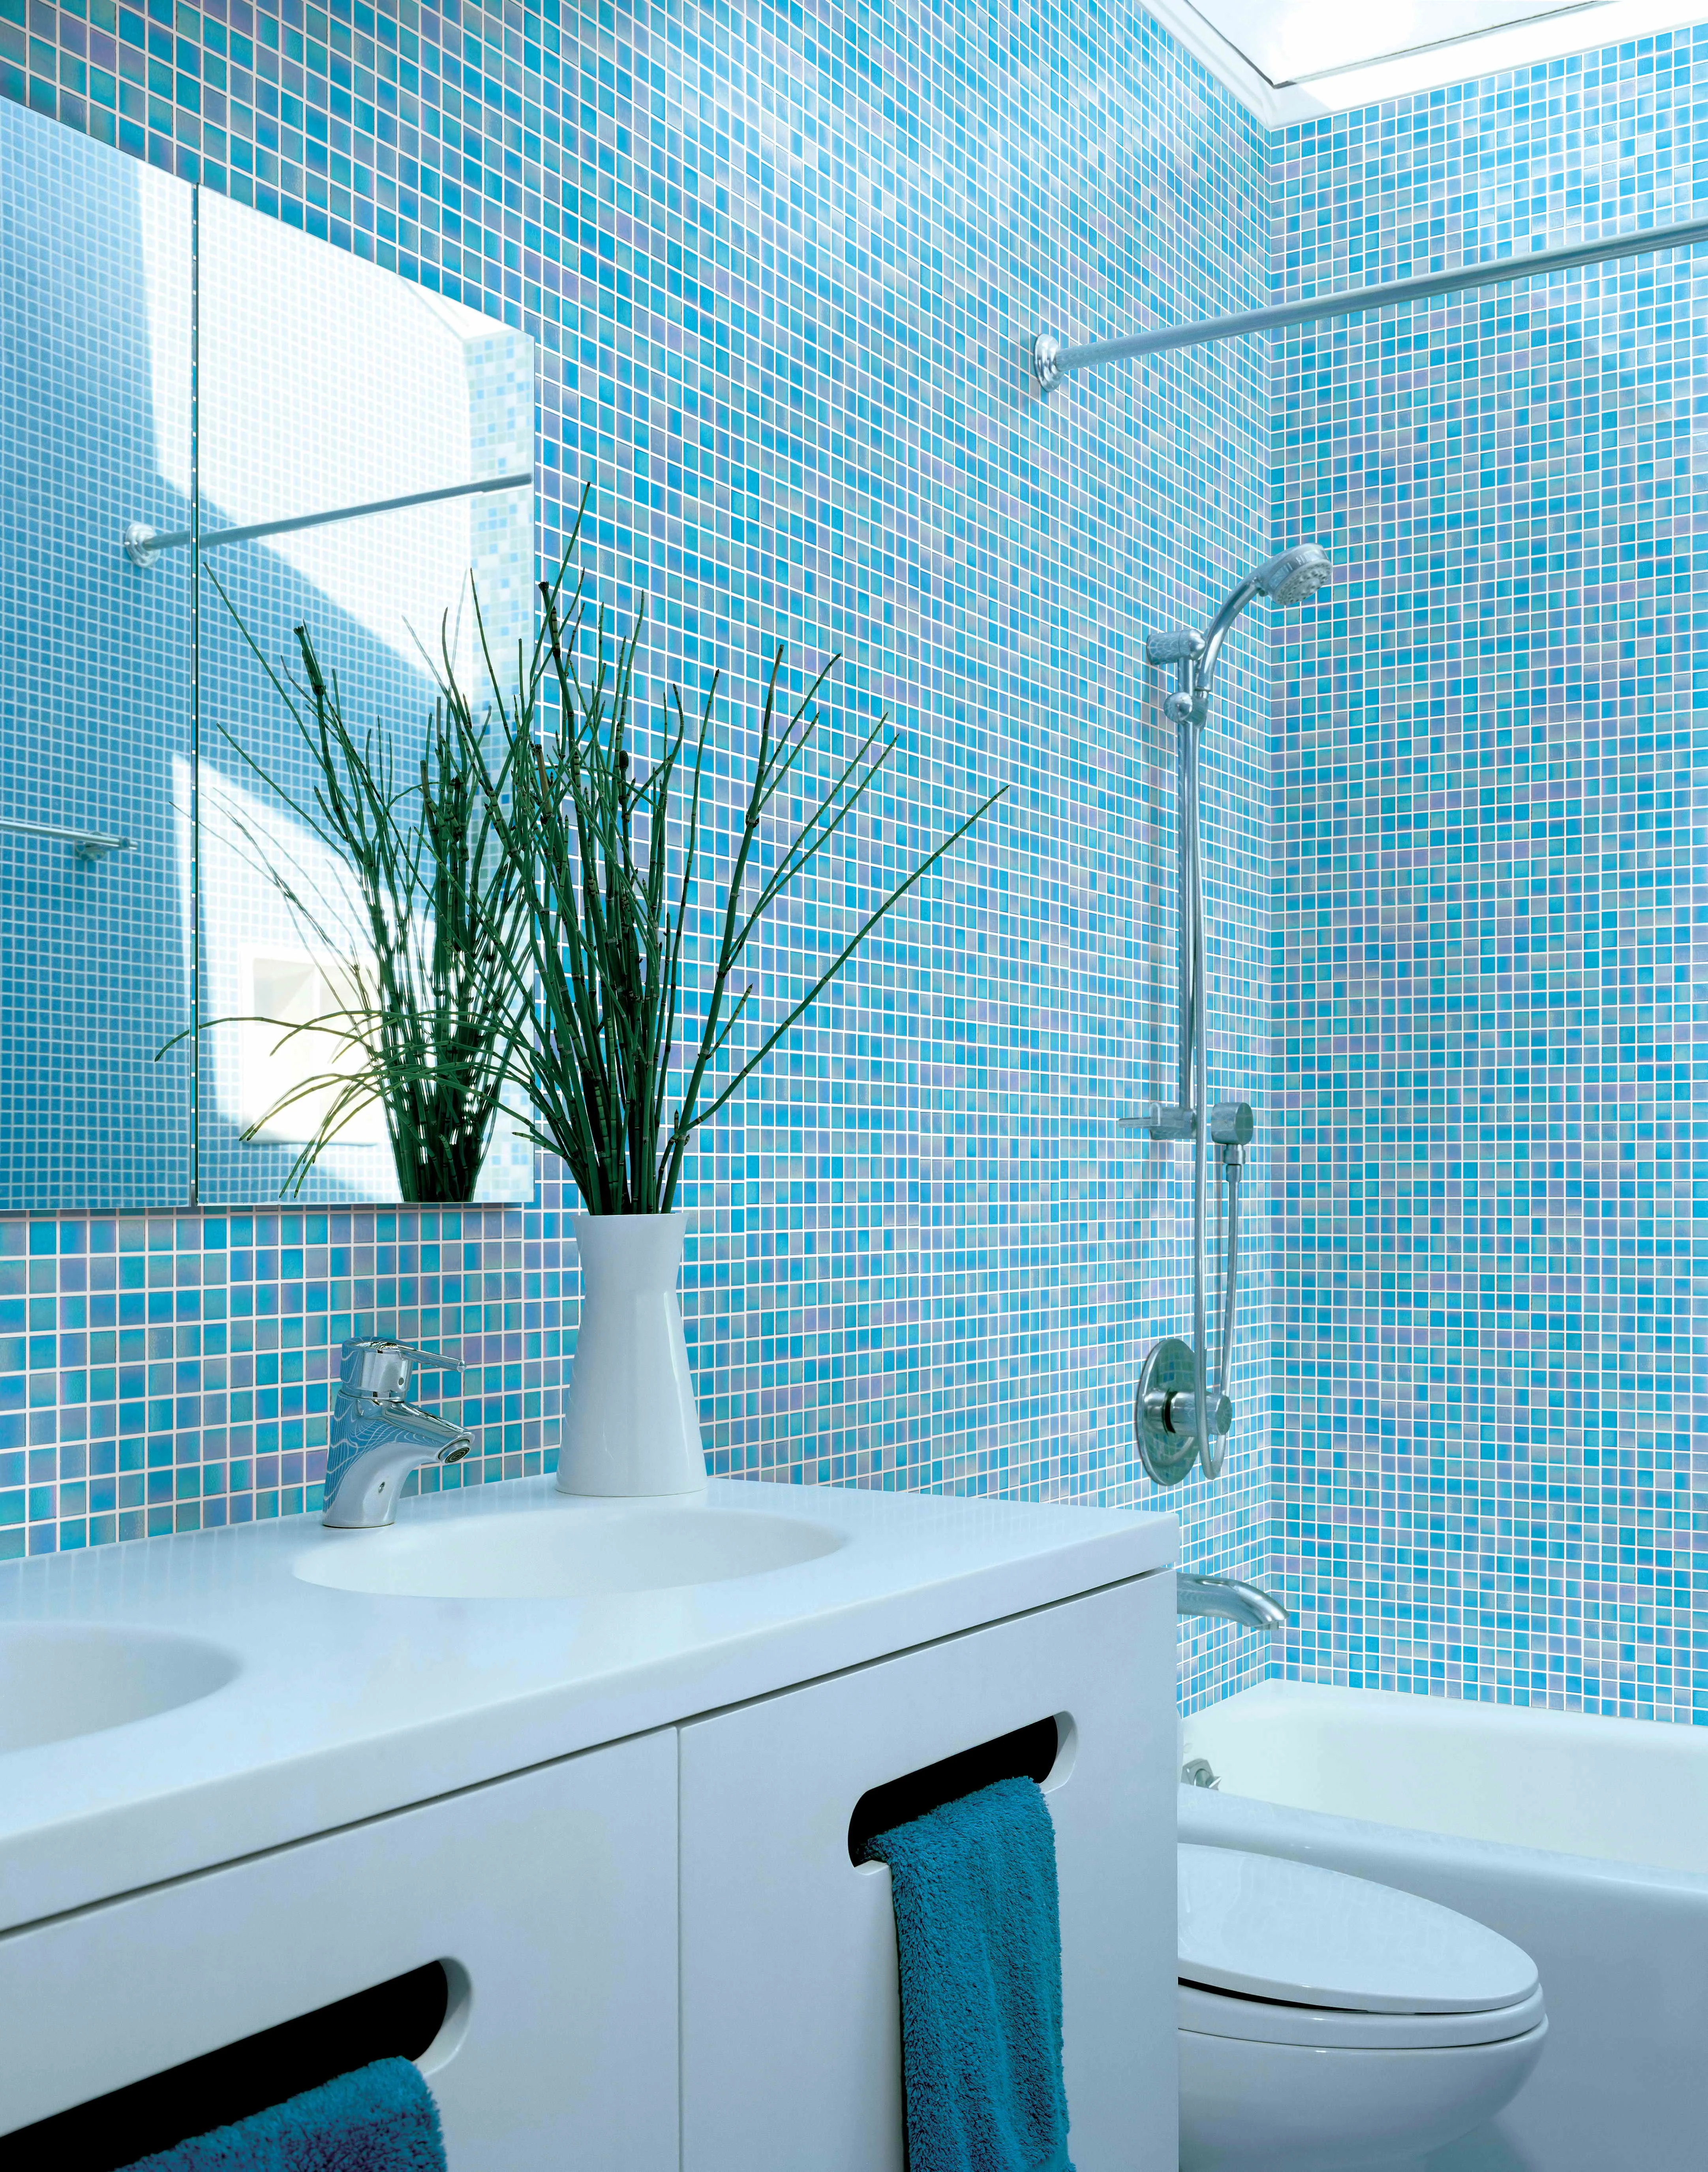 Купить мозаику для ванной plitka mosaica ru. Мозаика в ванной комнате. Плиточная мозаика для ванной. Голубая плитка для ванной. Ванная с мозаичной плиткой.